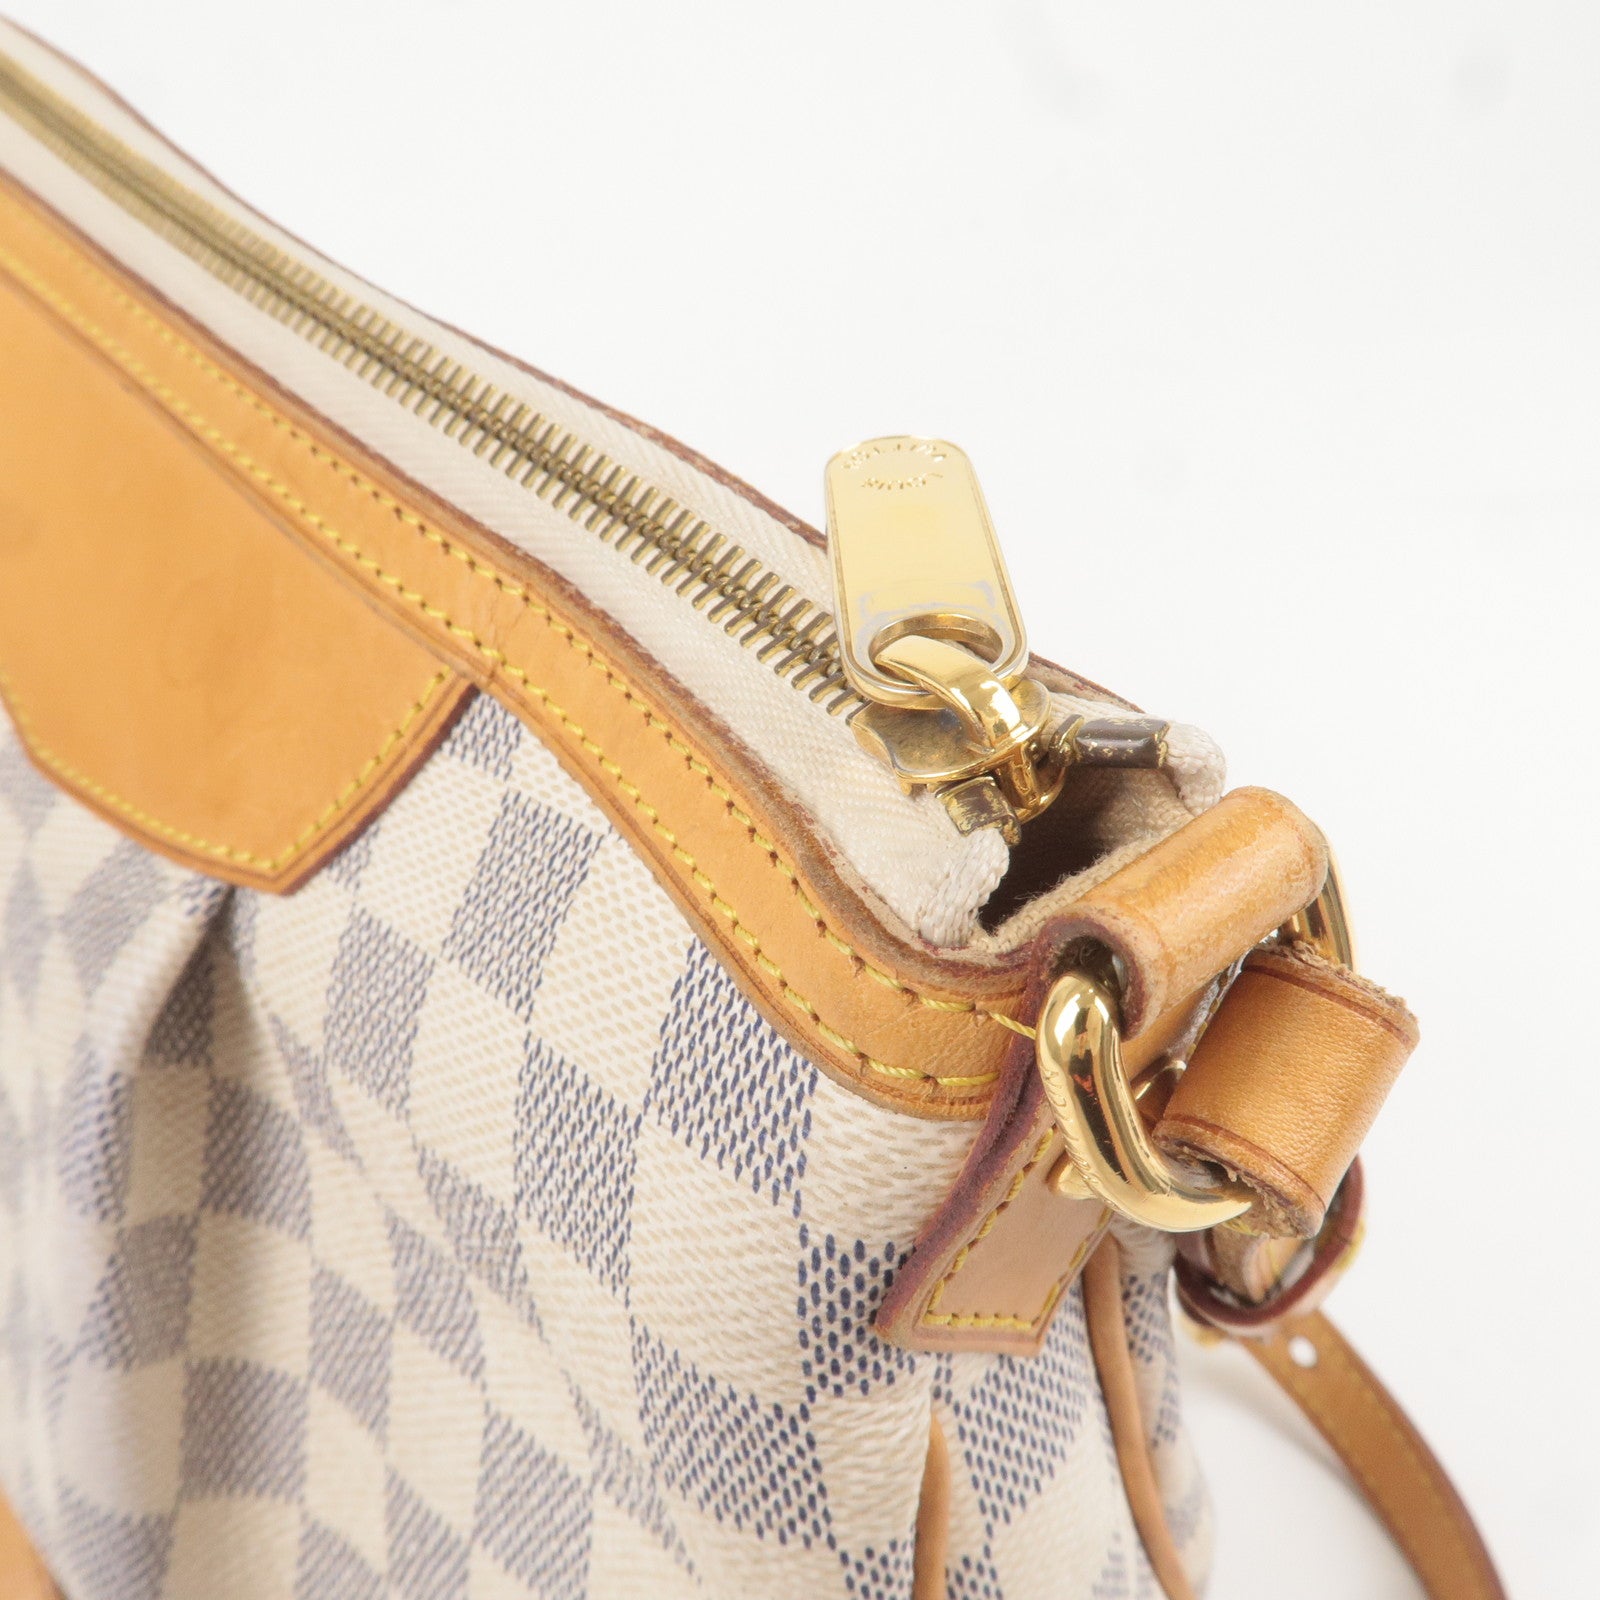 Louis Vuitton, Bags, Authentic Louis Vuitton Damier Azur Siracusa Gm 2  Way Shoulder Handbag